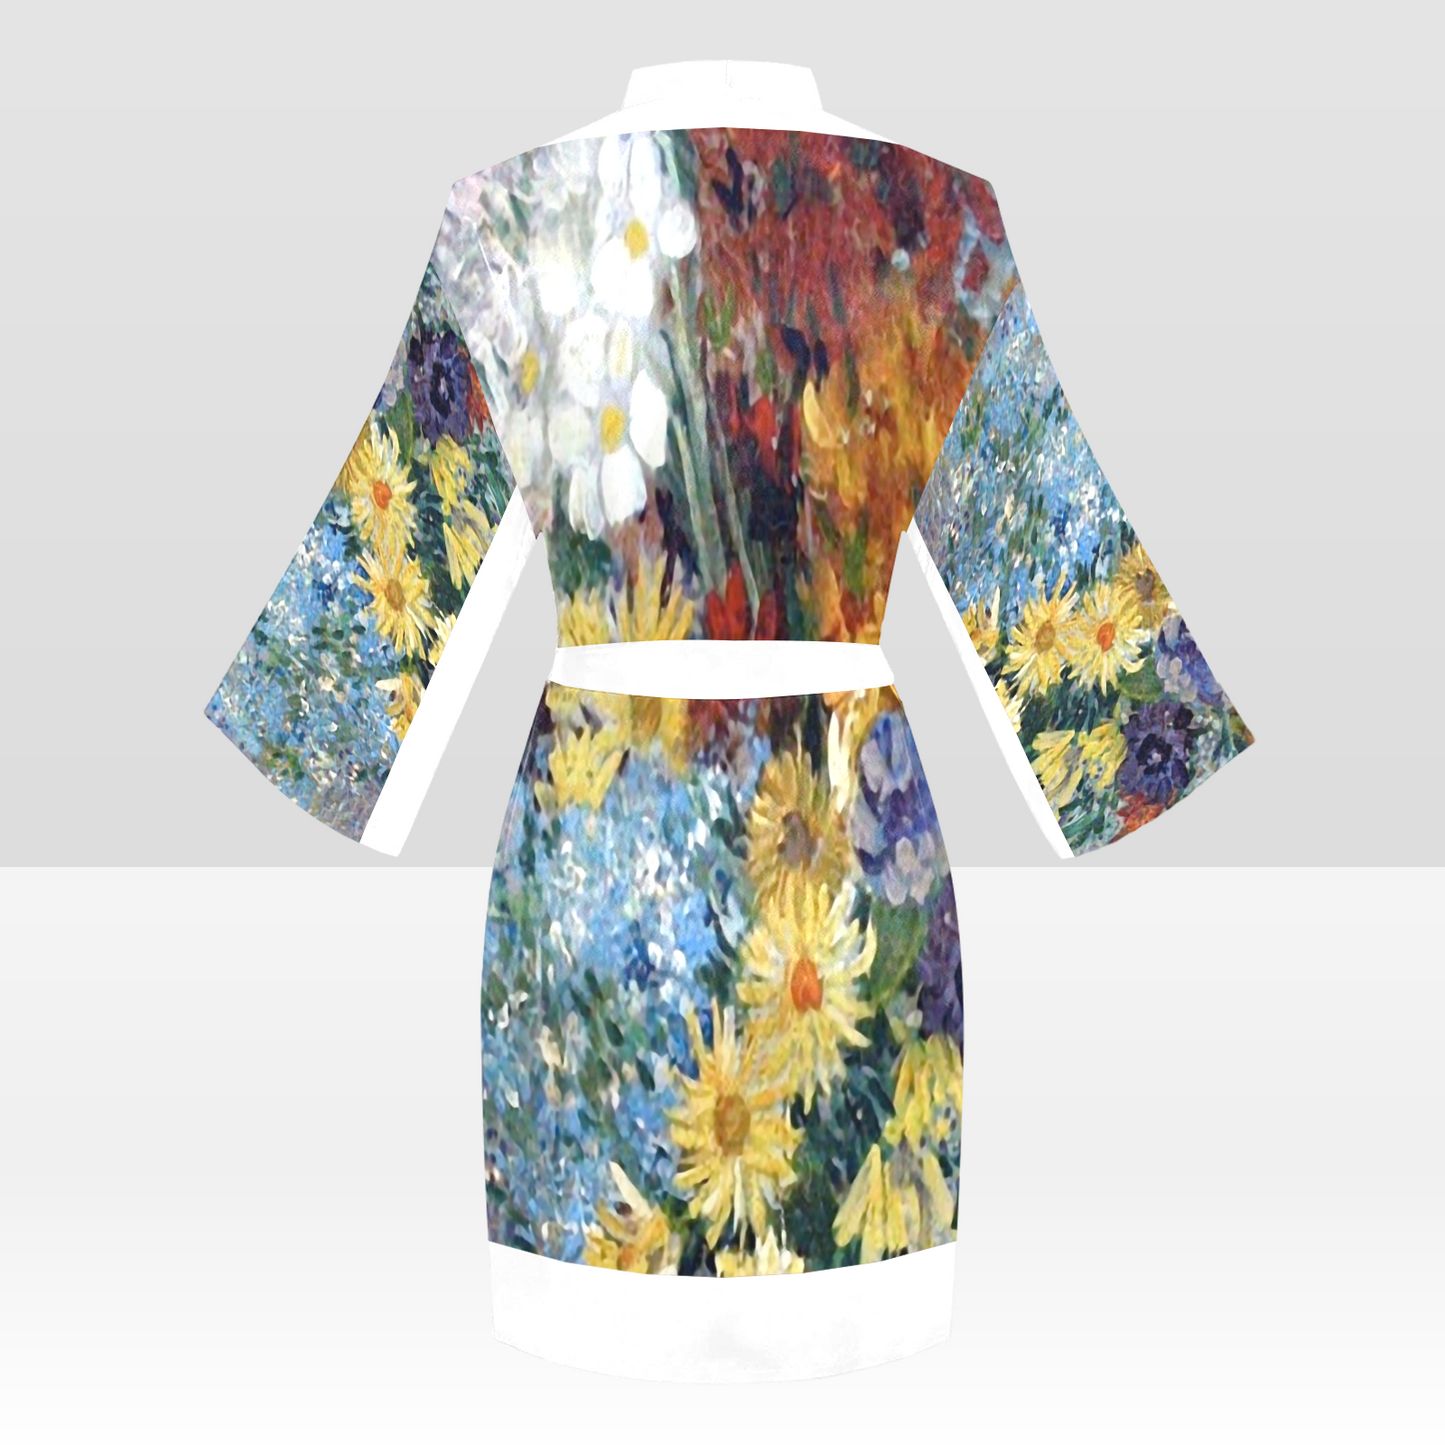 Vintage Floral Kimono Robe, Black or White Trim, Sizes XS to 2XL, Design 41